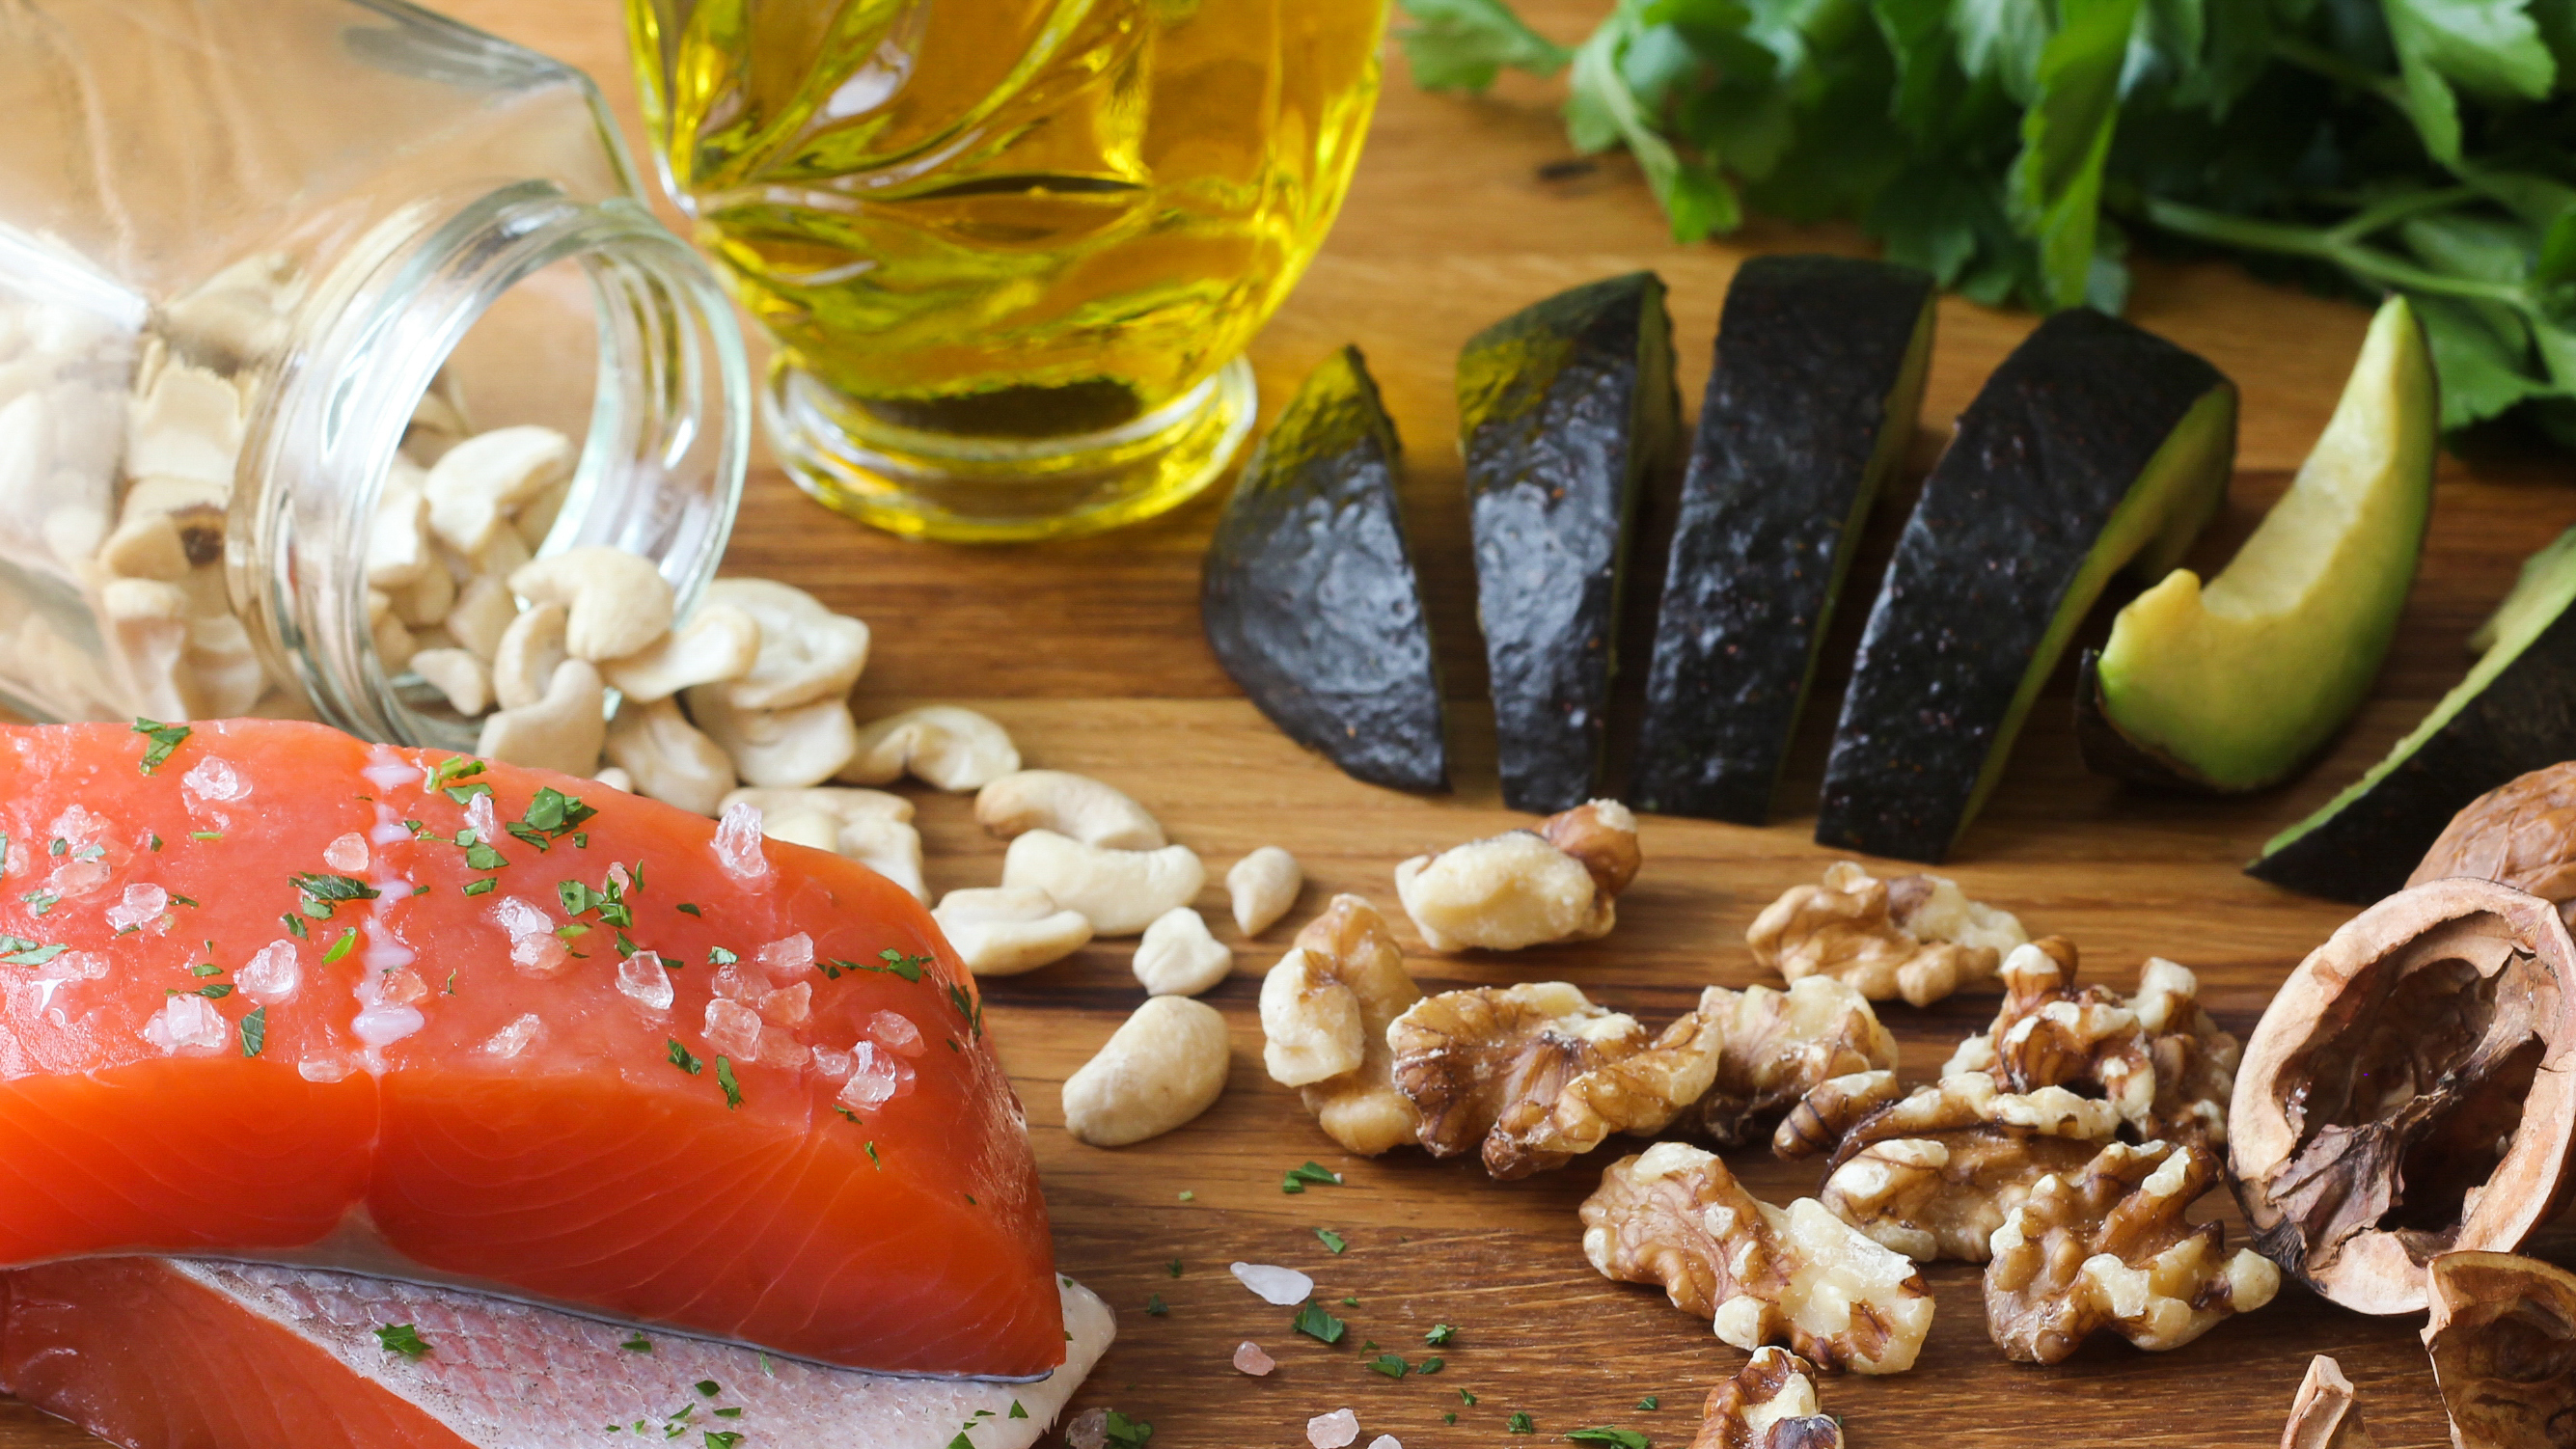 El pescado de aguas profundas, la palta, los frutos secos y el aceite de oliva son algunas de las fuentes de Omega 3